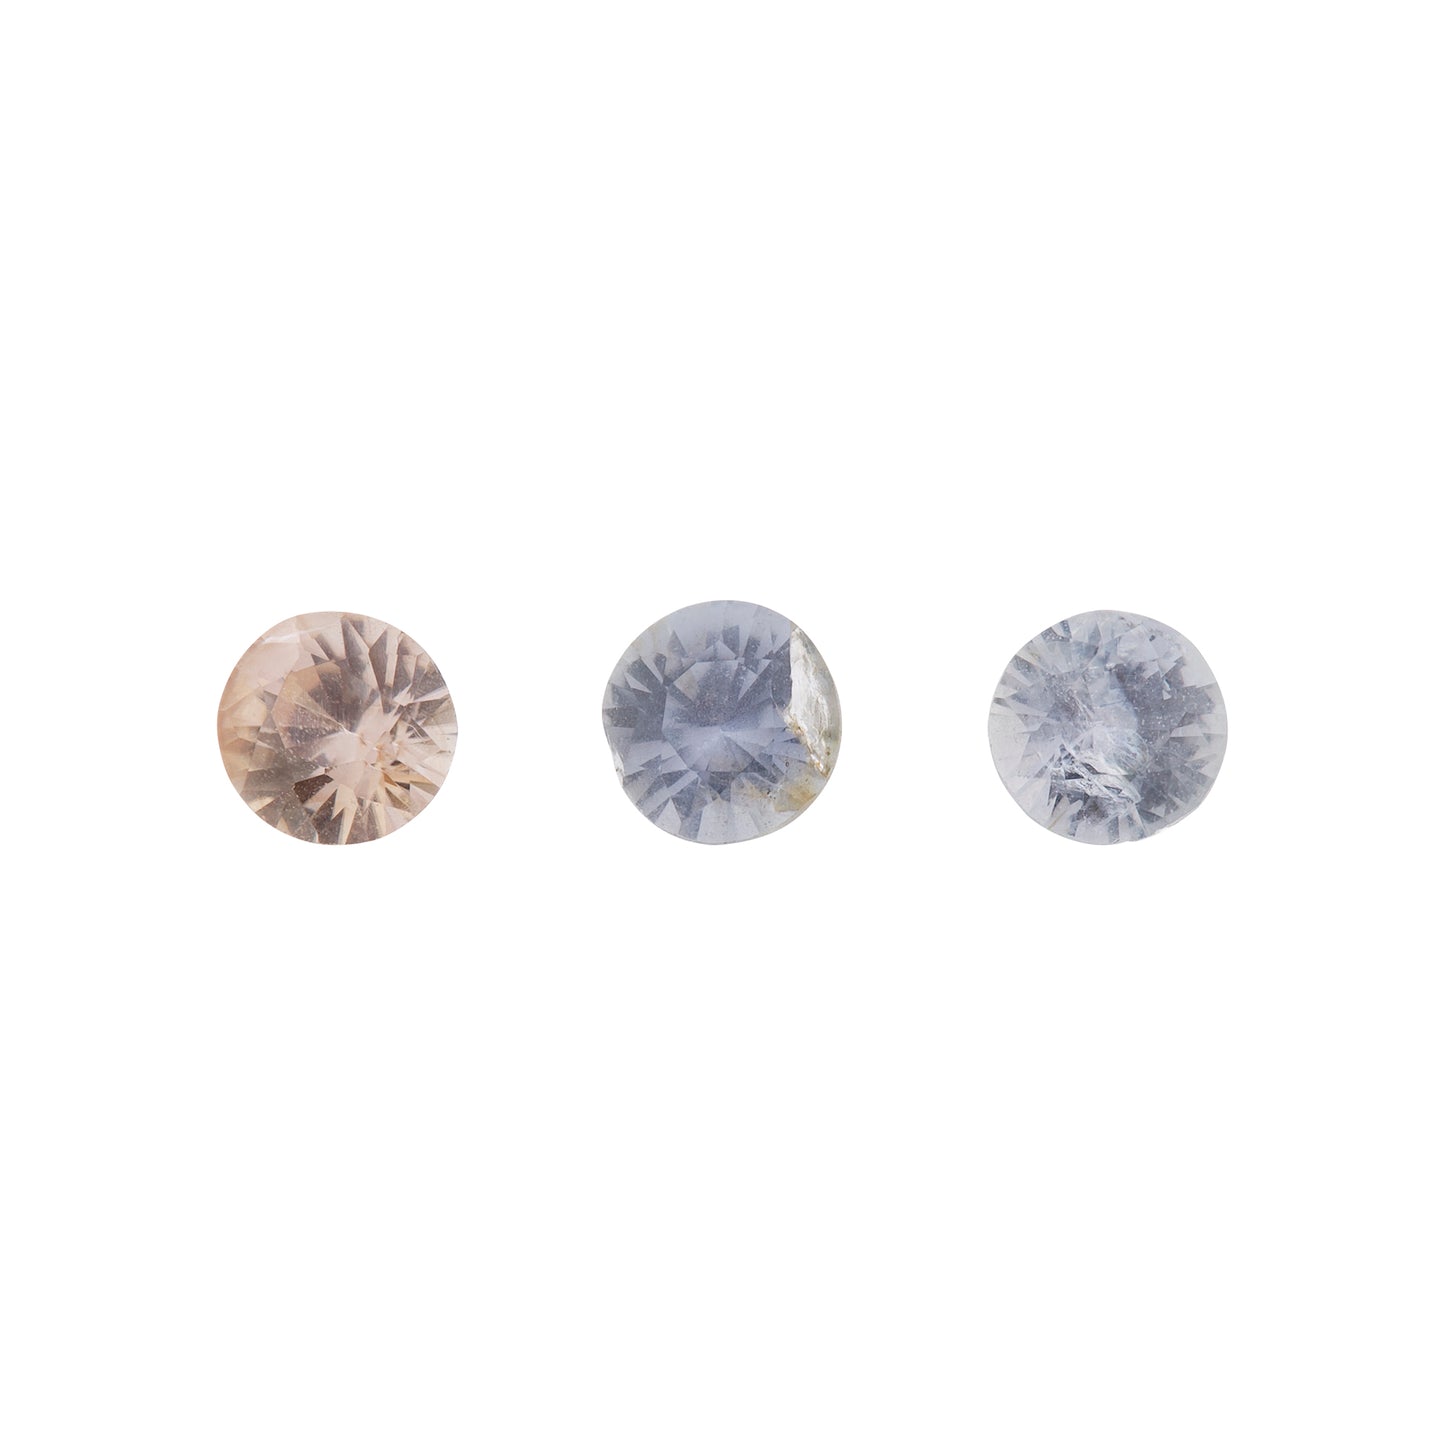 Saphir, gemischt, rosa, violett, pastell, Rund, 0,40 ct., 4,1-4,3 mm